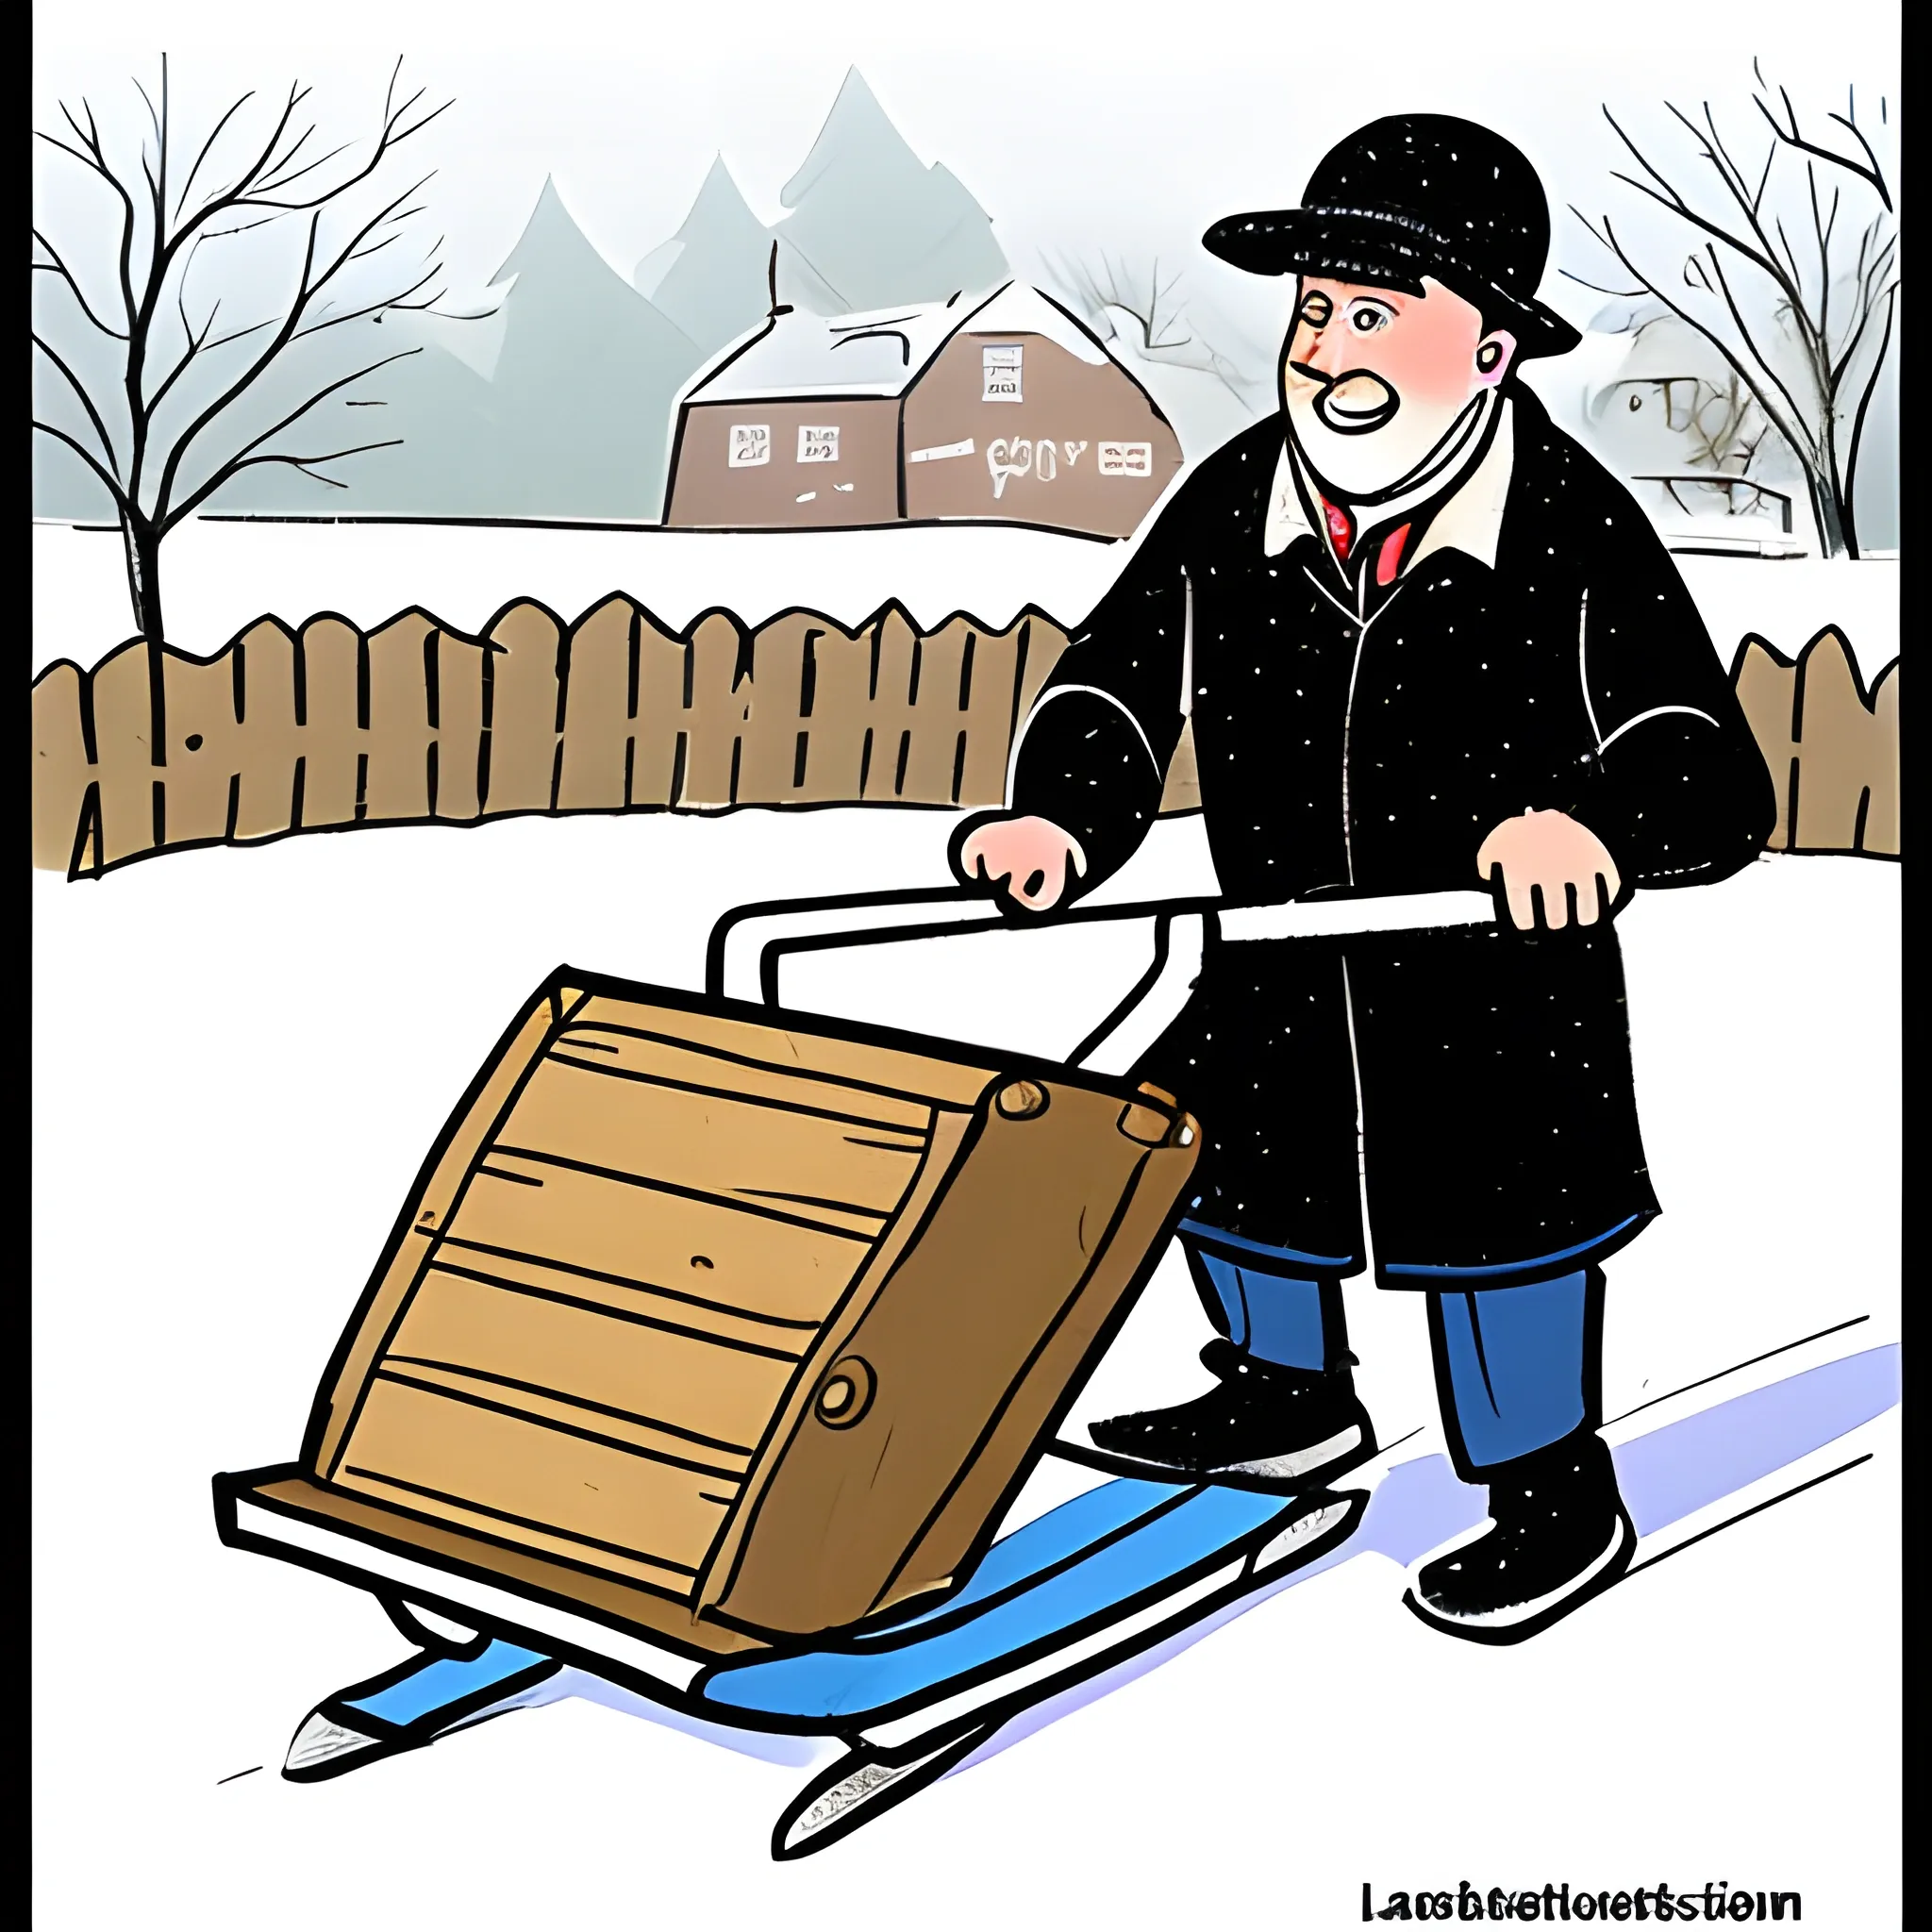  man on a sledge
, Cartoon